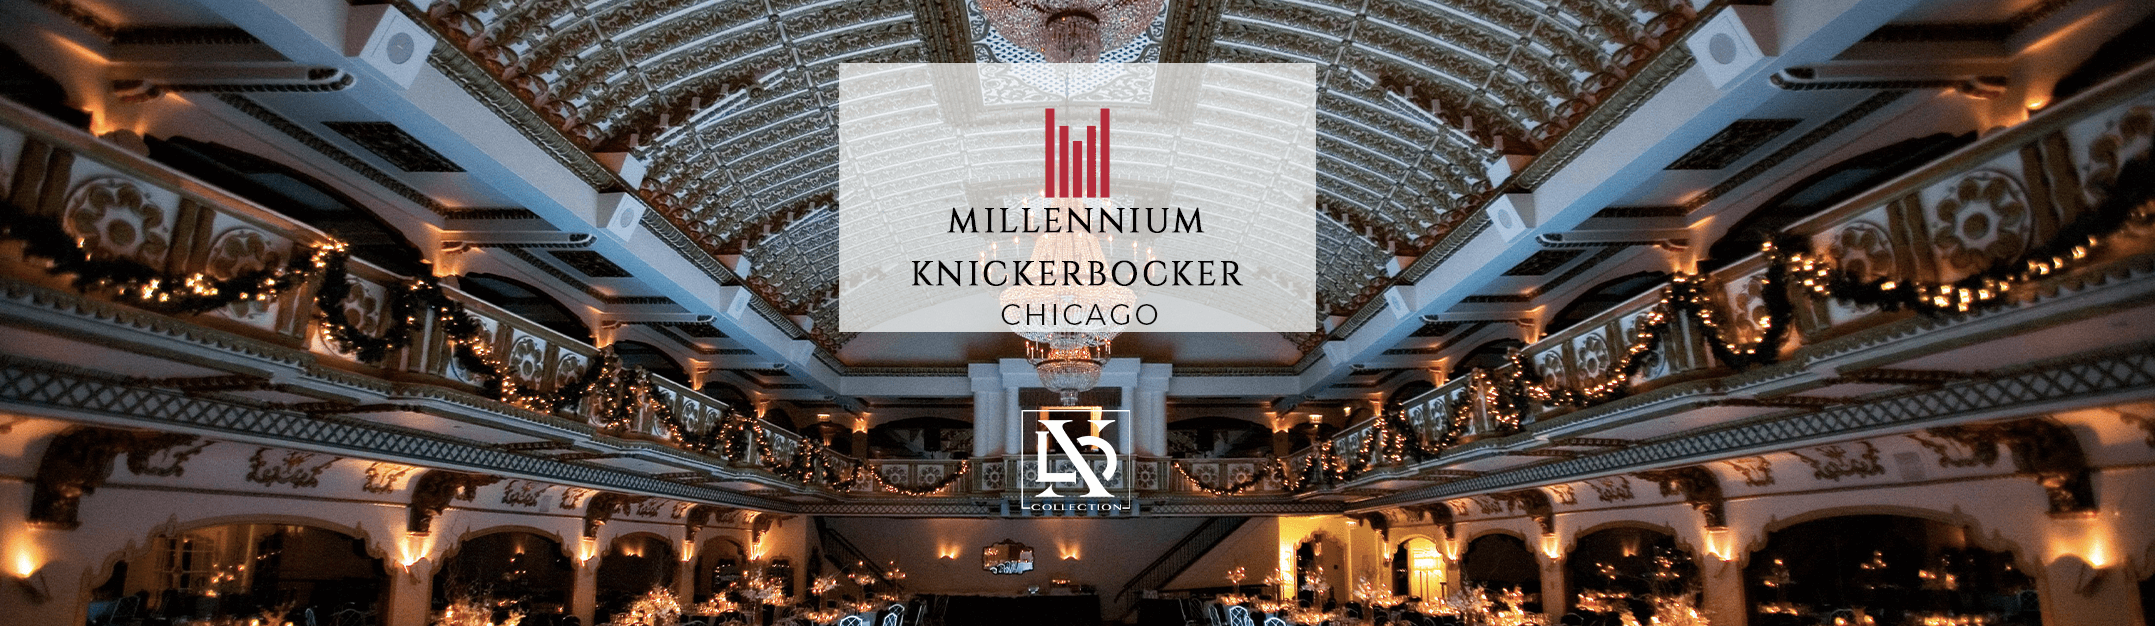 Millennium Knickerbocker Chicago